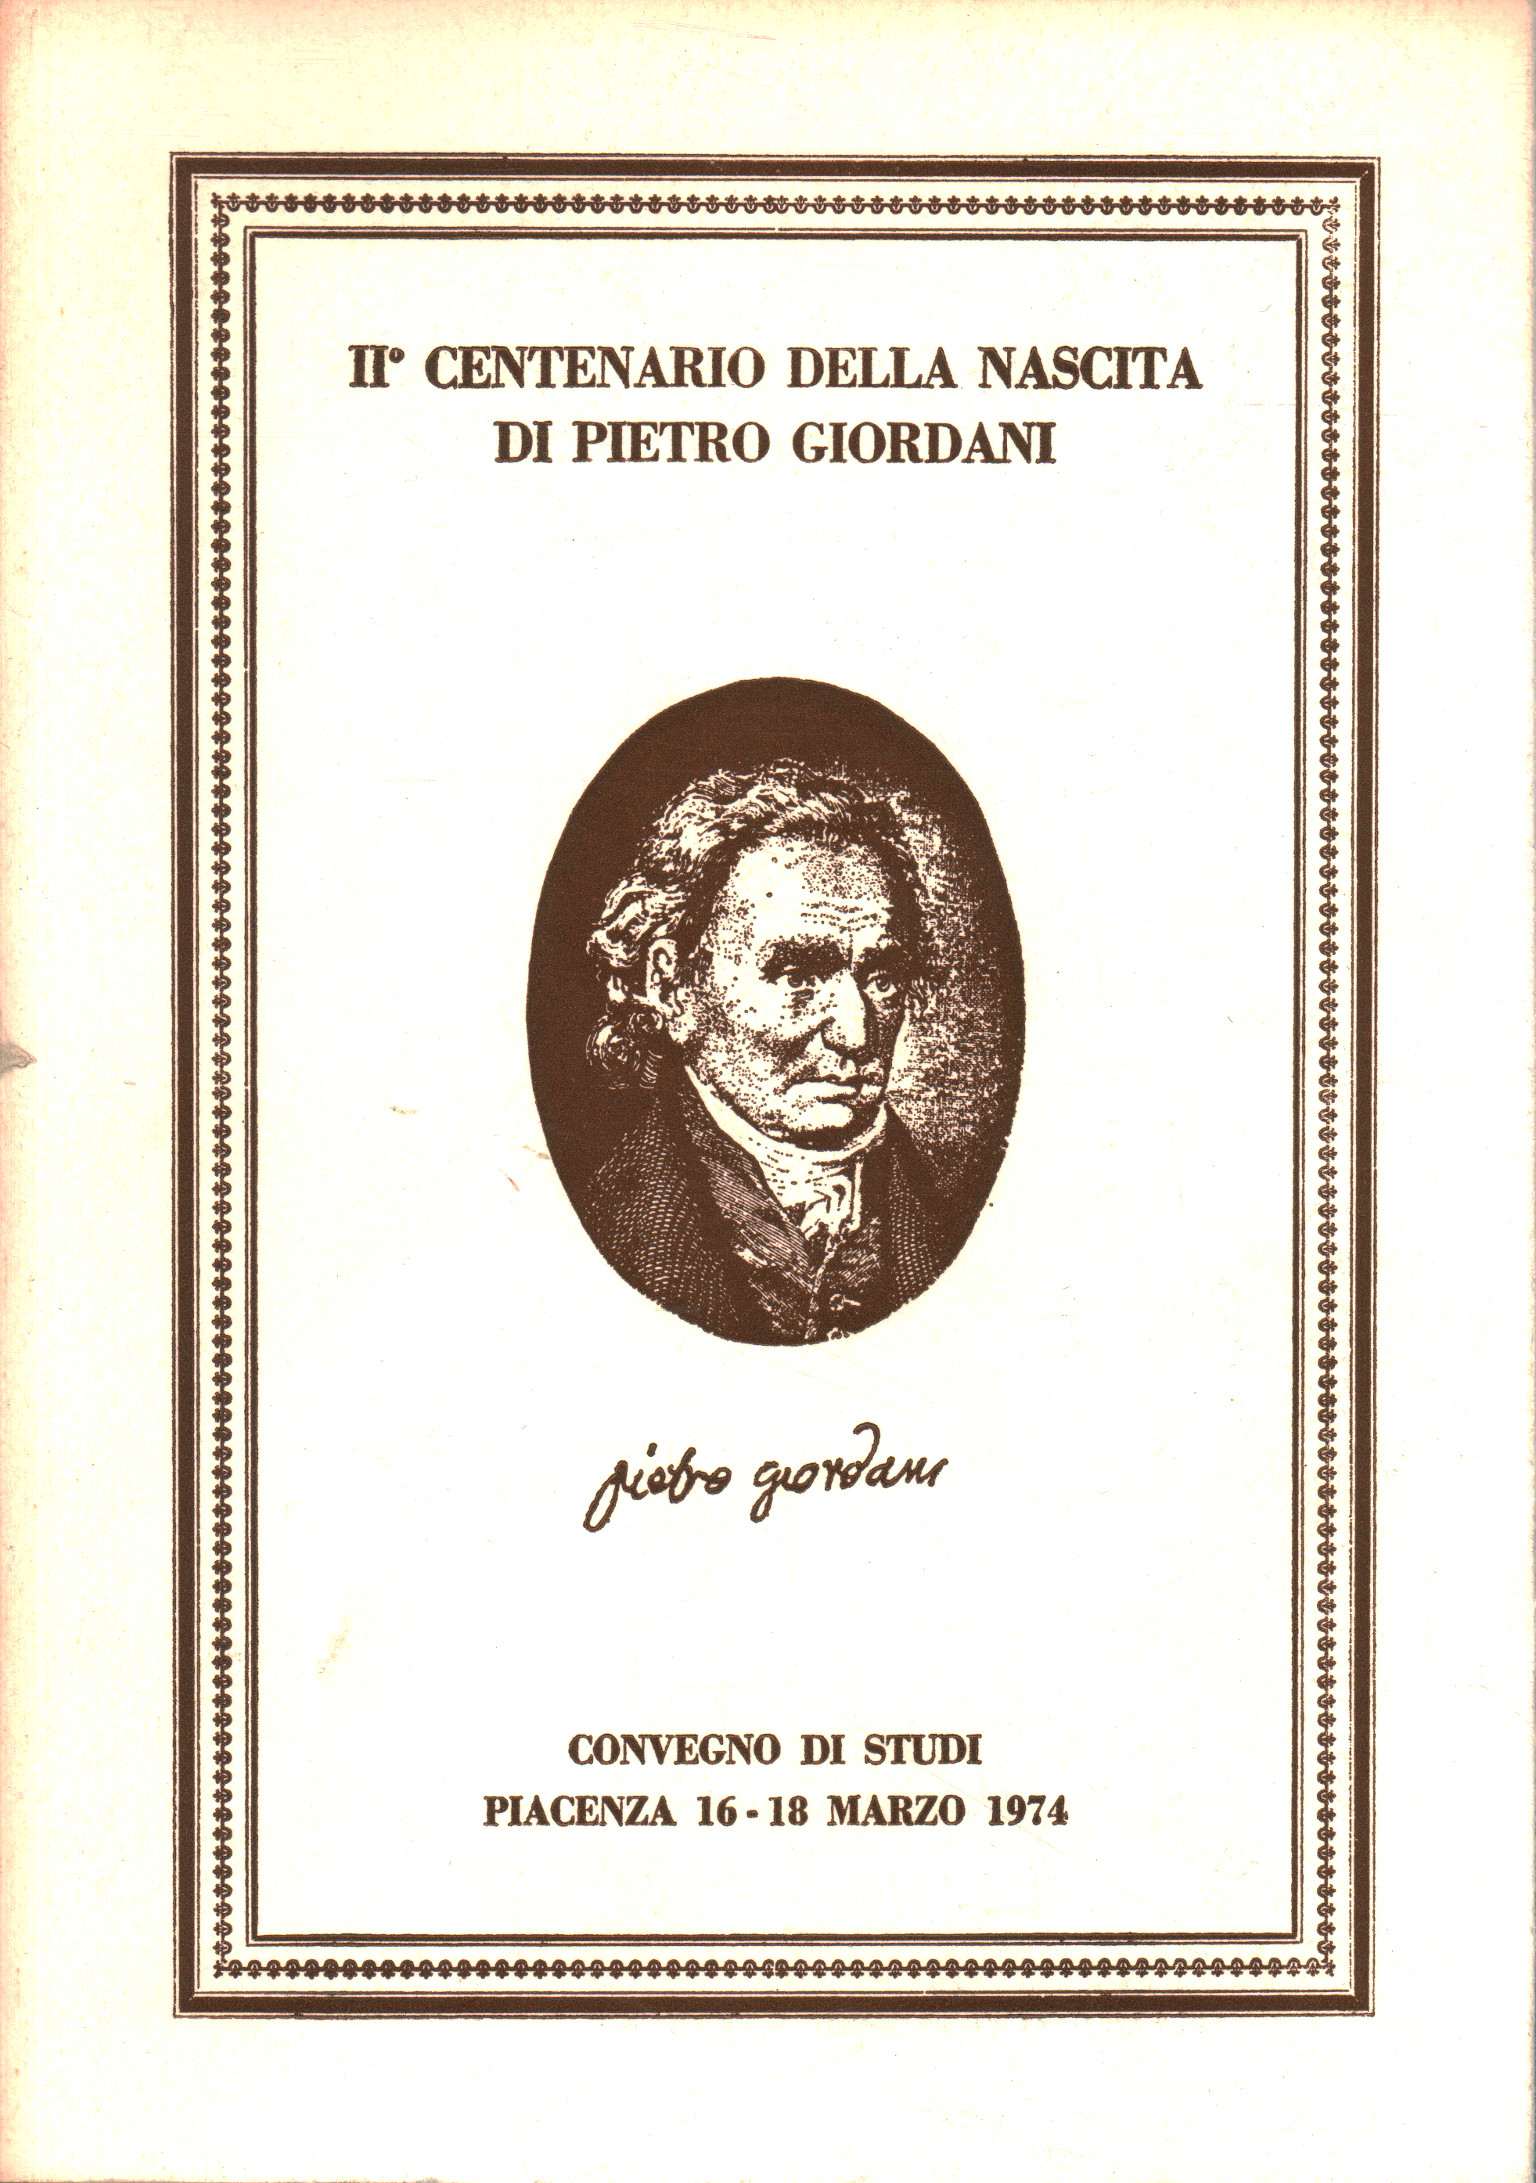 Pietro Giordani en el segundo centenario de su nacimiento, A.A.V.V.